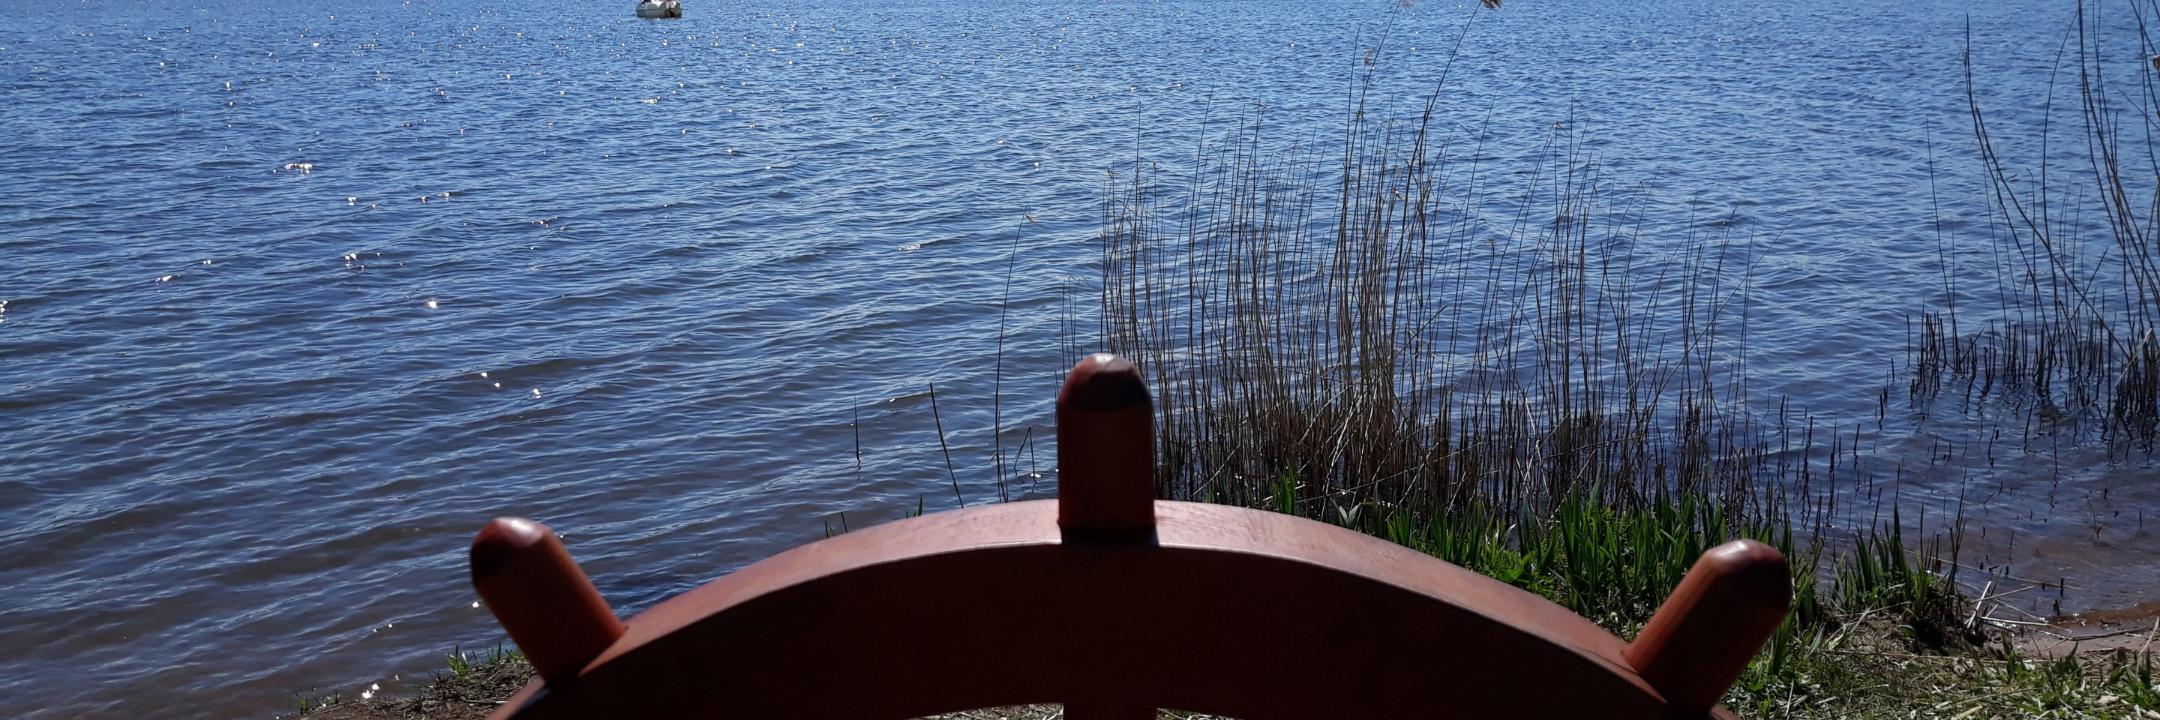 Man sieht ein eingelassenes Schiffssteuer auf einer Balustrade, dahinter der Bostalsee bei Sonnenschein